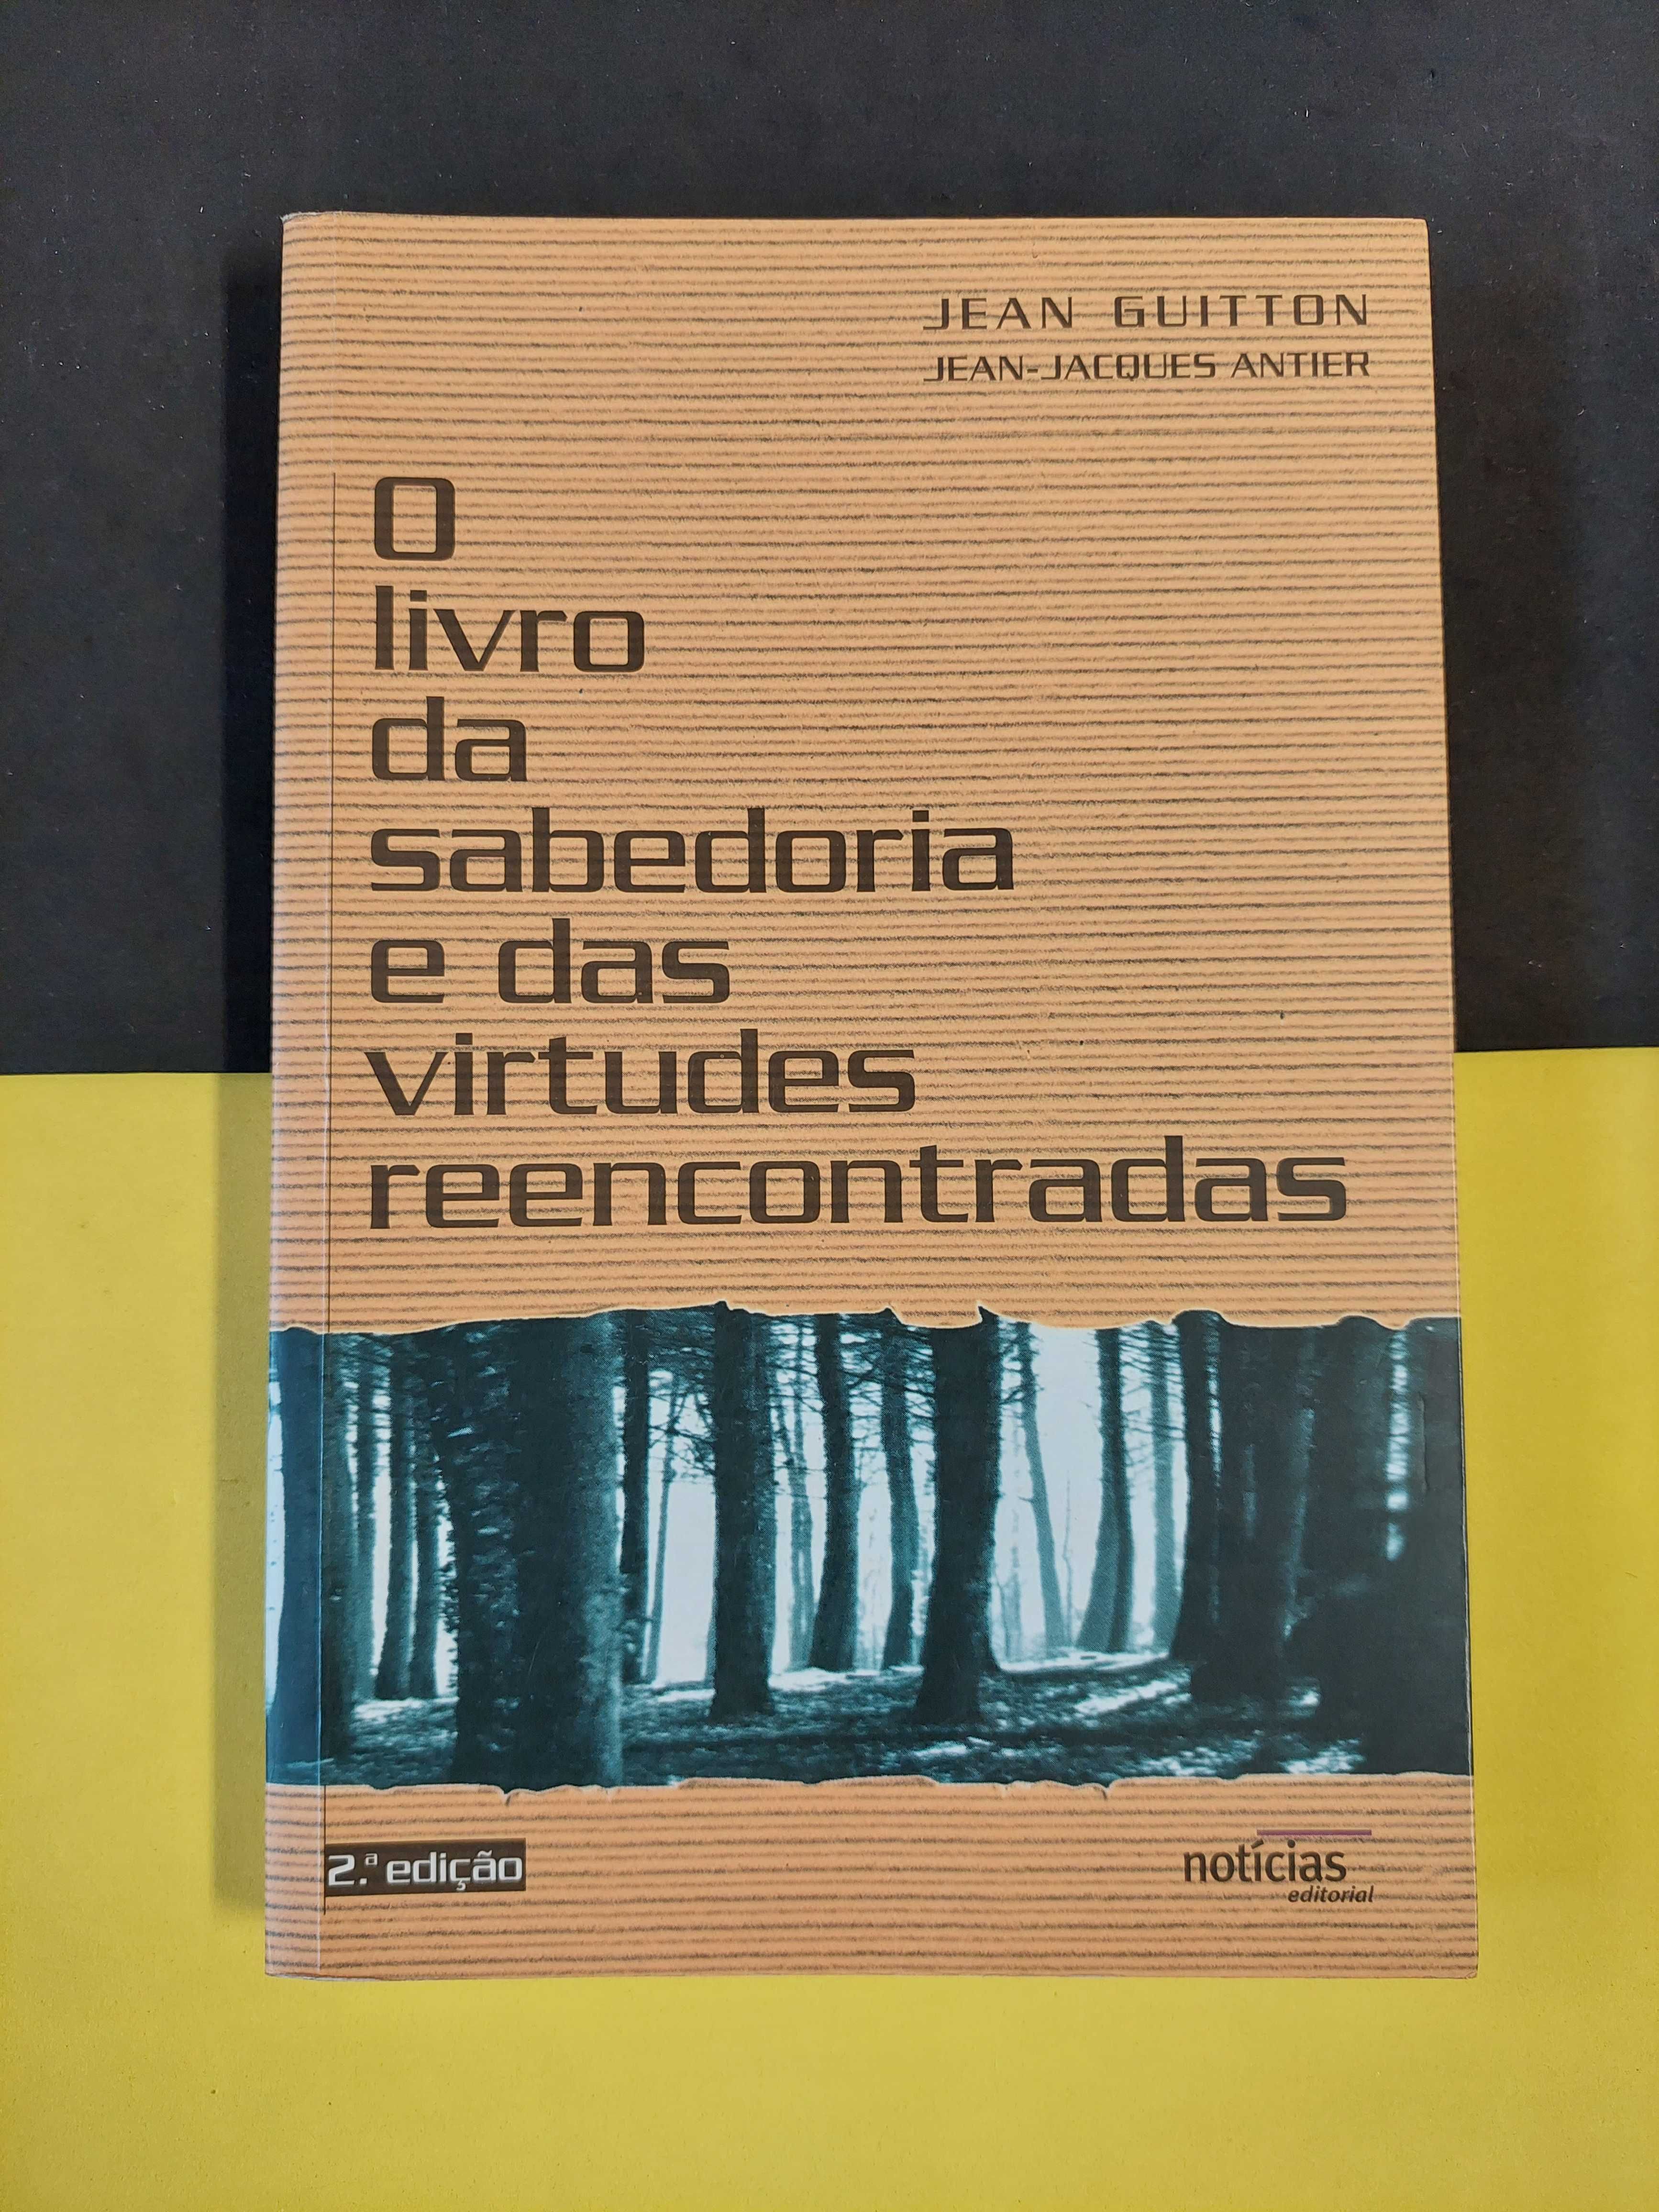 Jean Guitton - O livro da sabedoria e das virtudes reencontradas